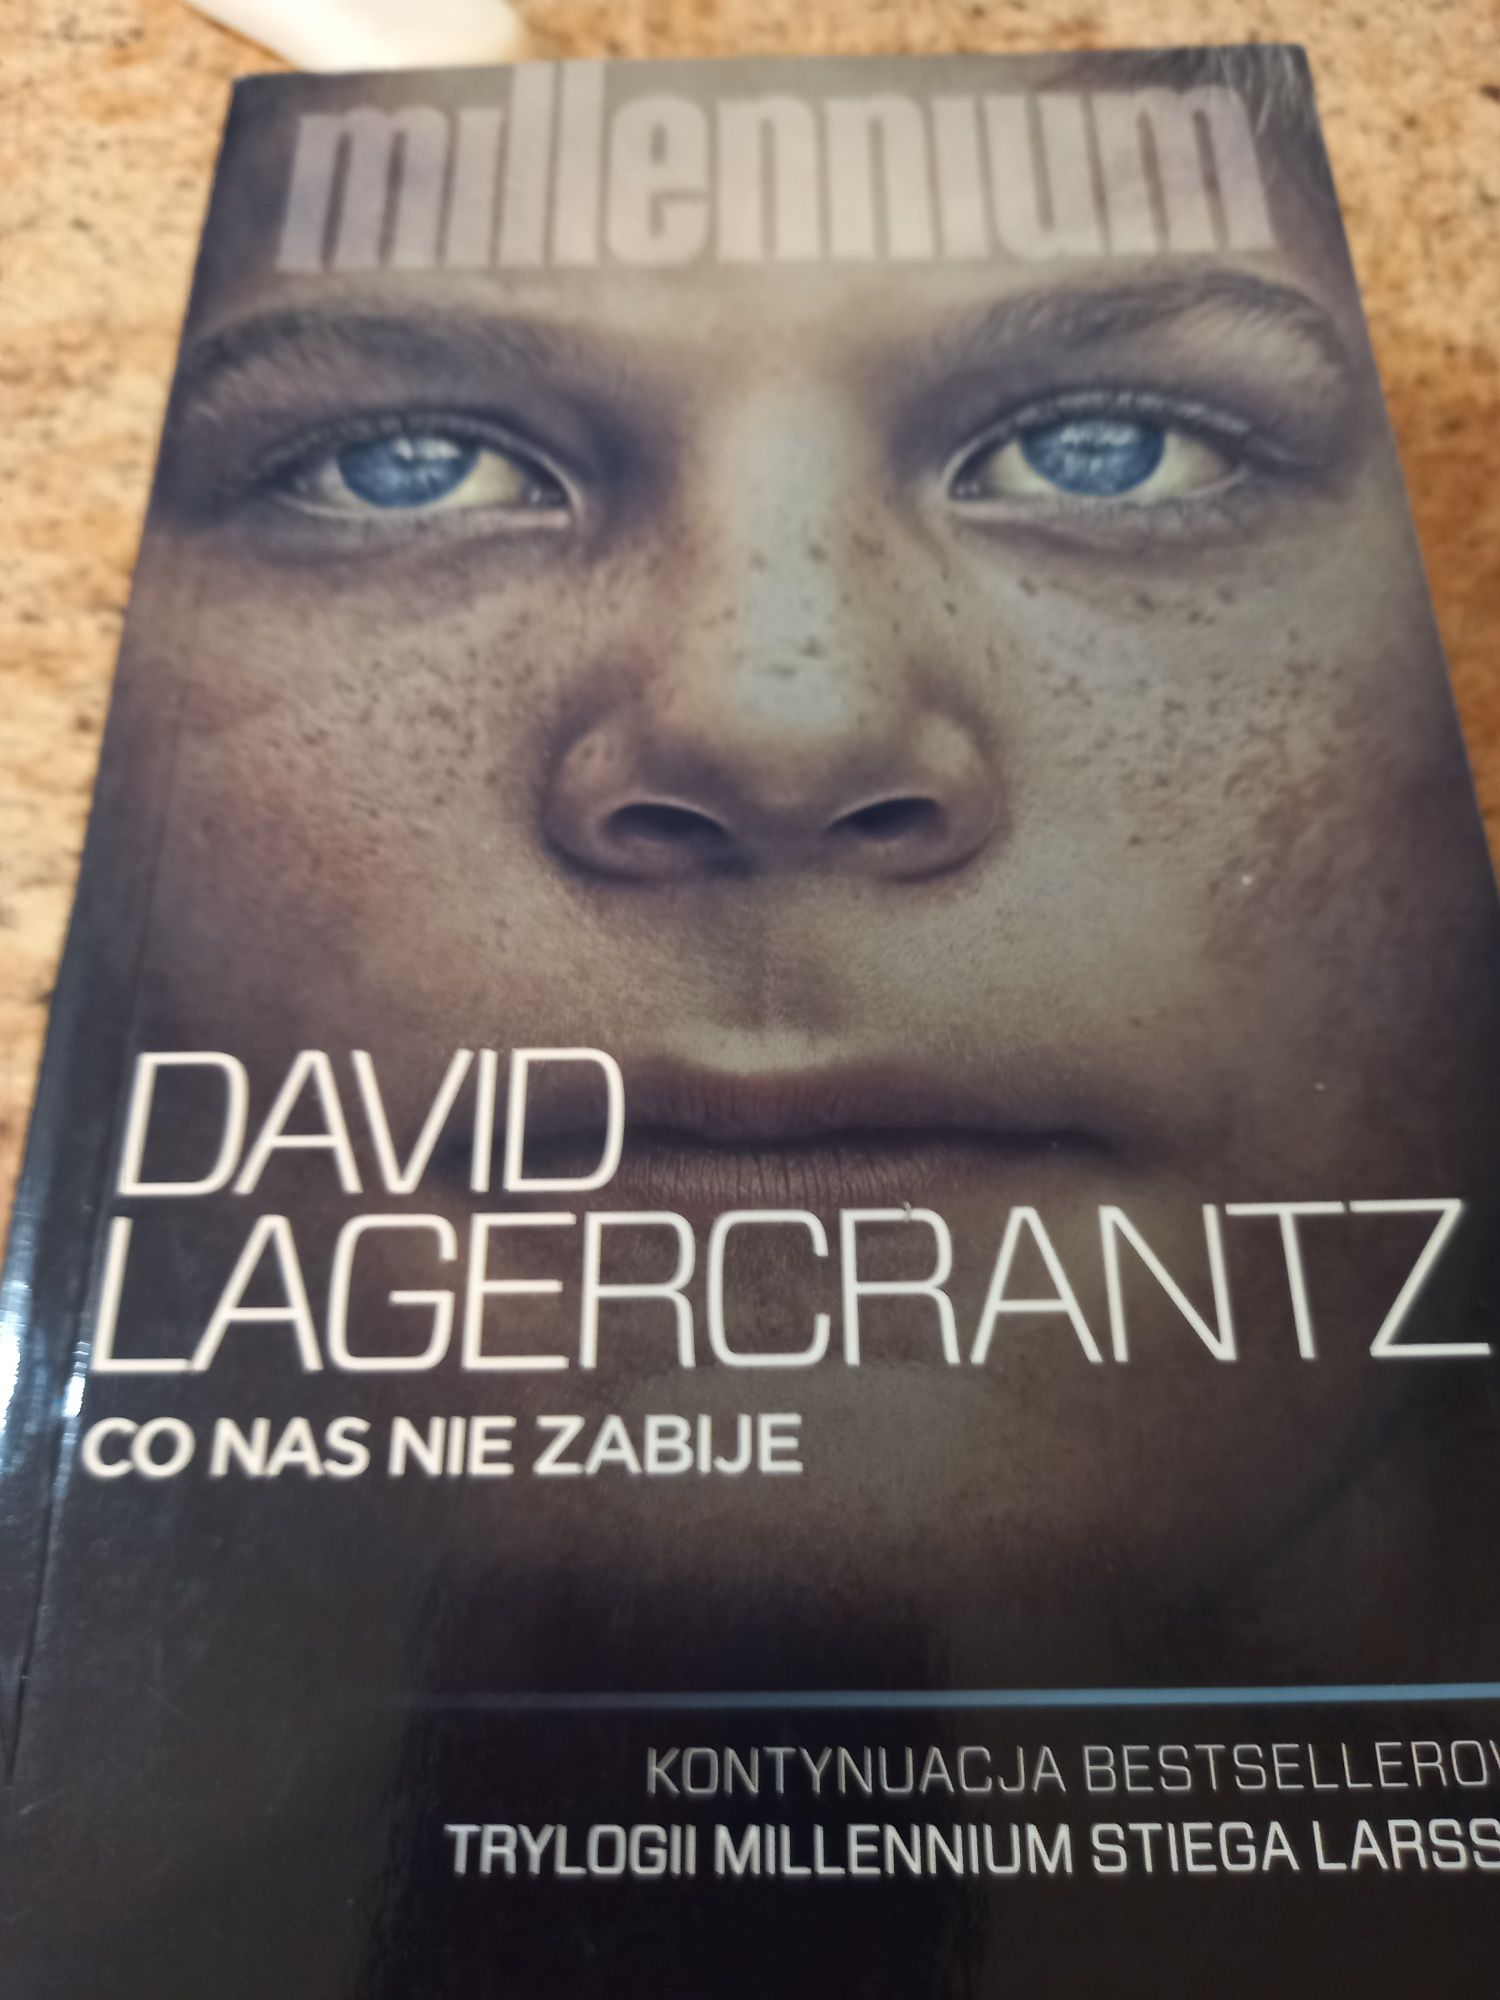 "Millennium co nas nie zabije "David Lagercrantz